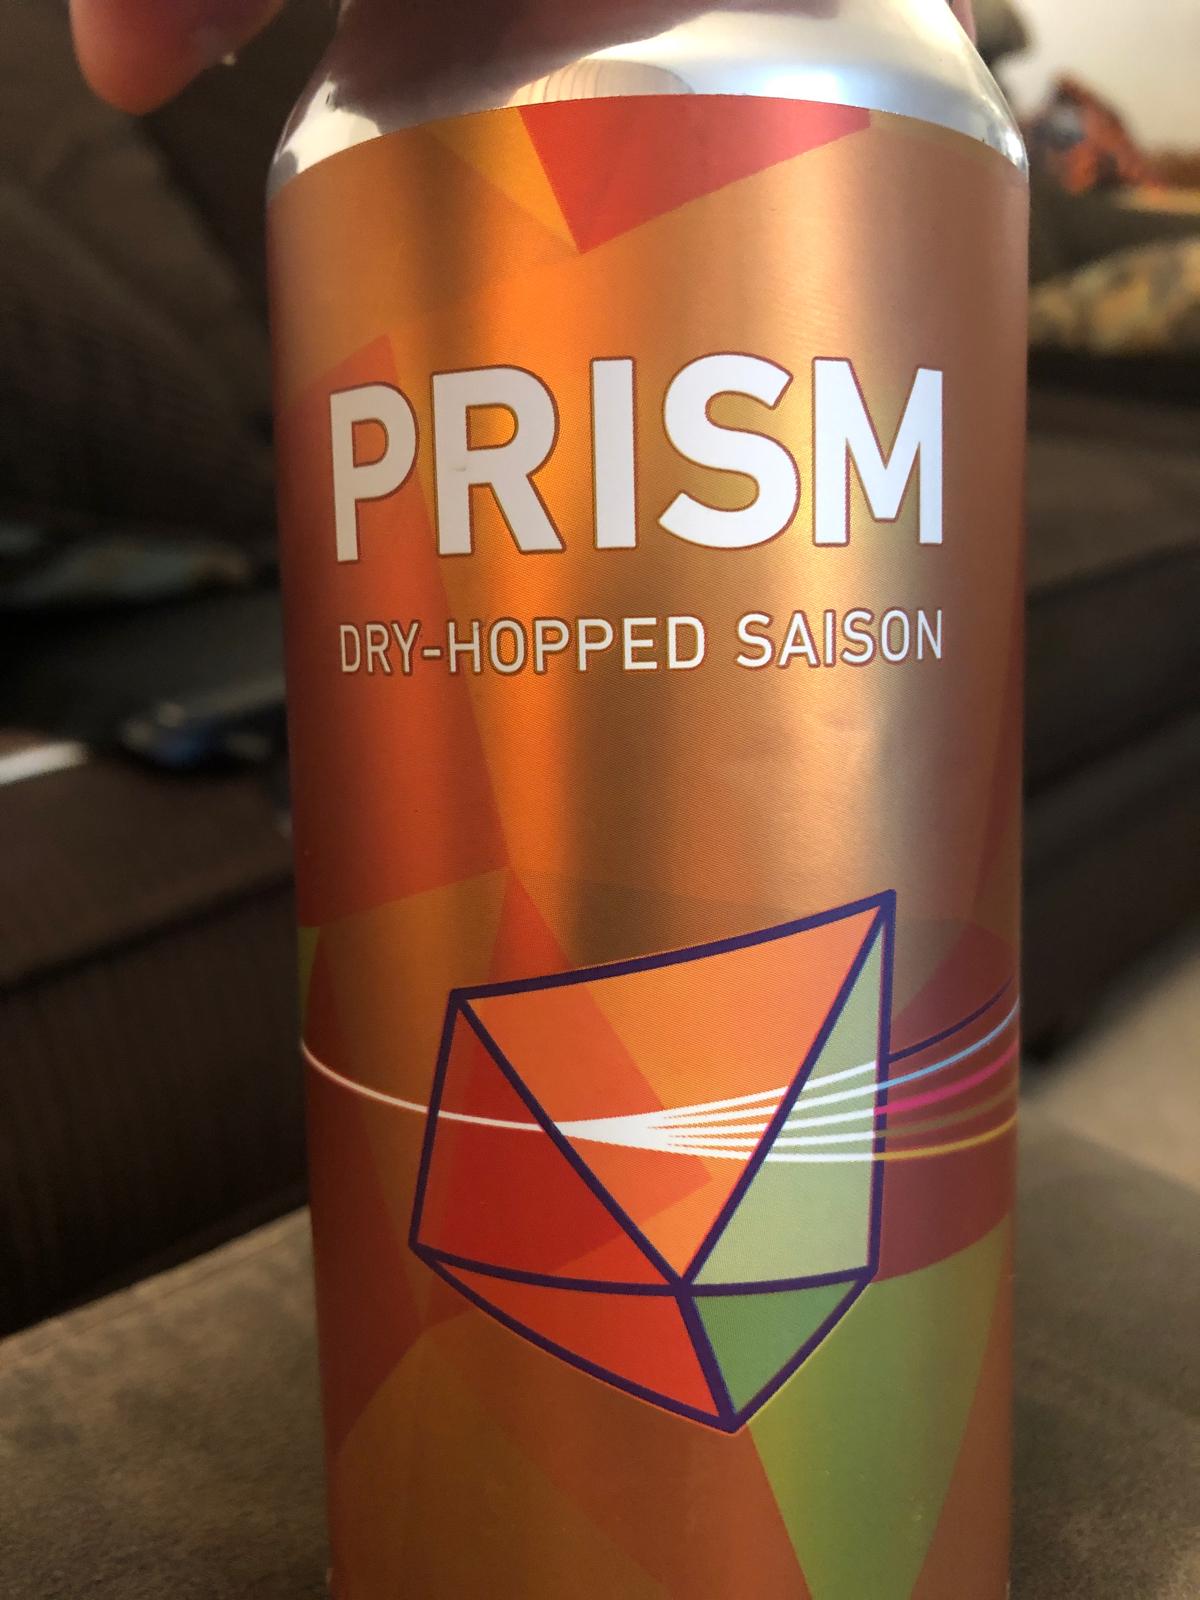 Prism - Mandarina Bavaria & Spalt